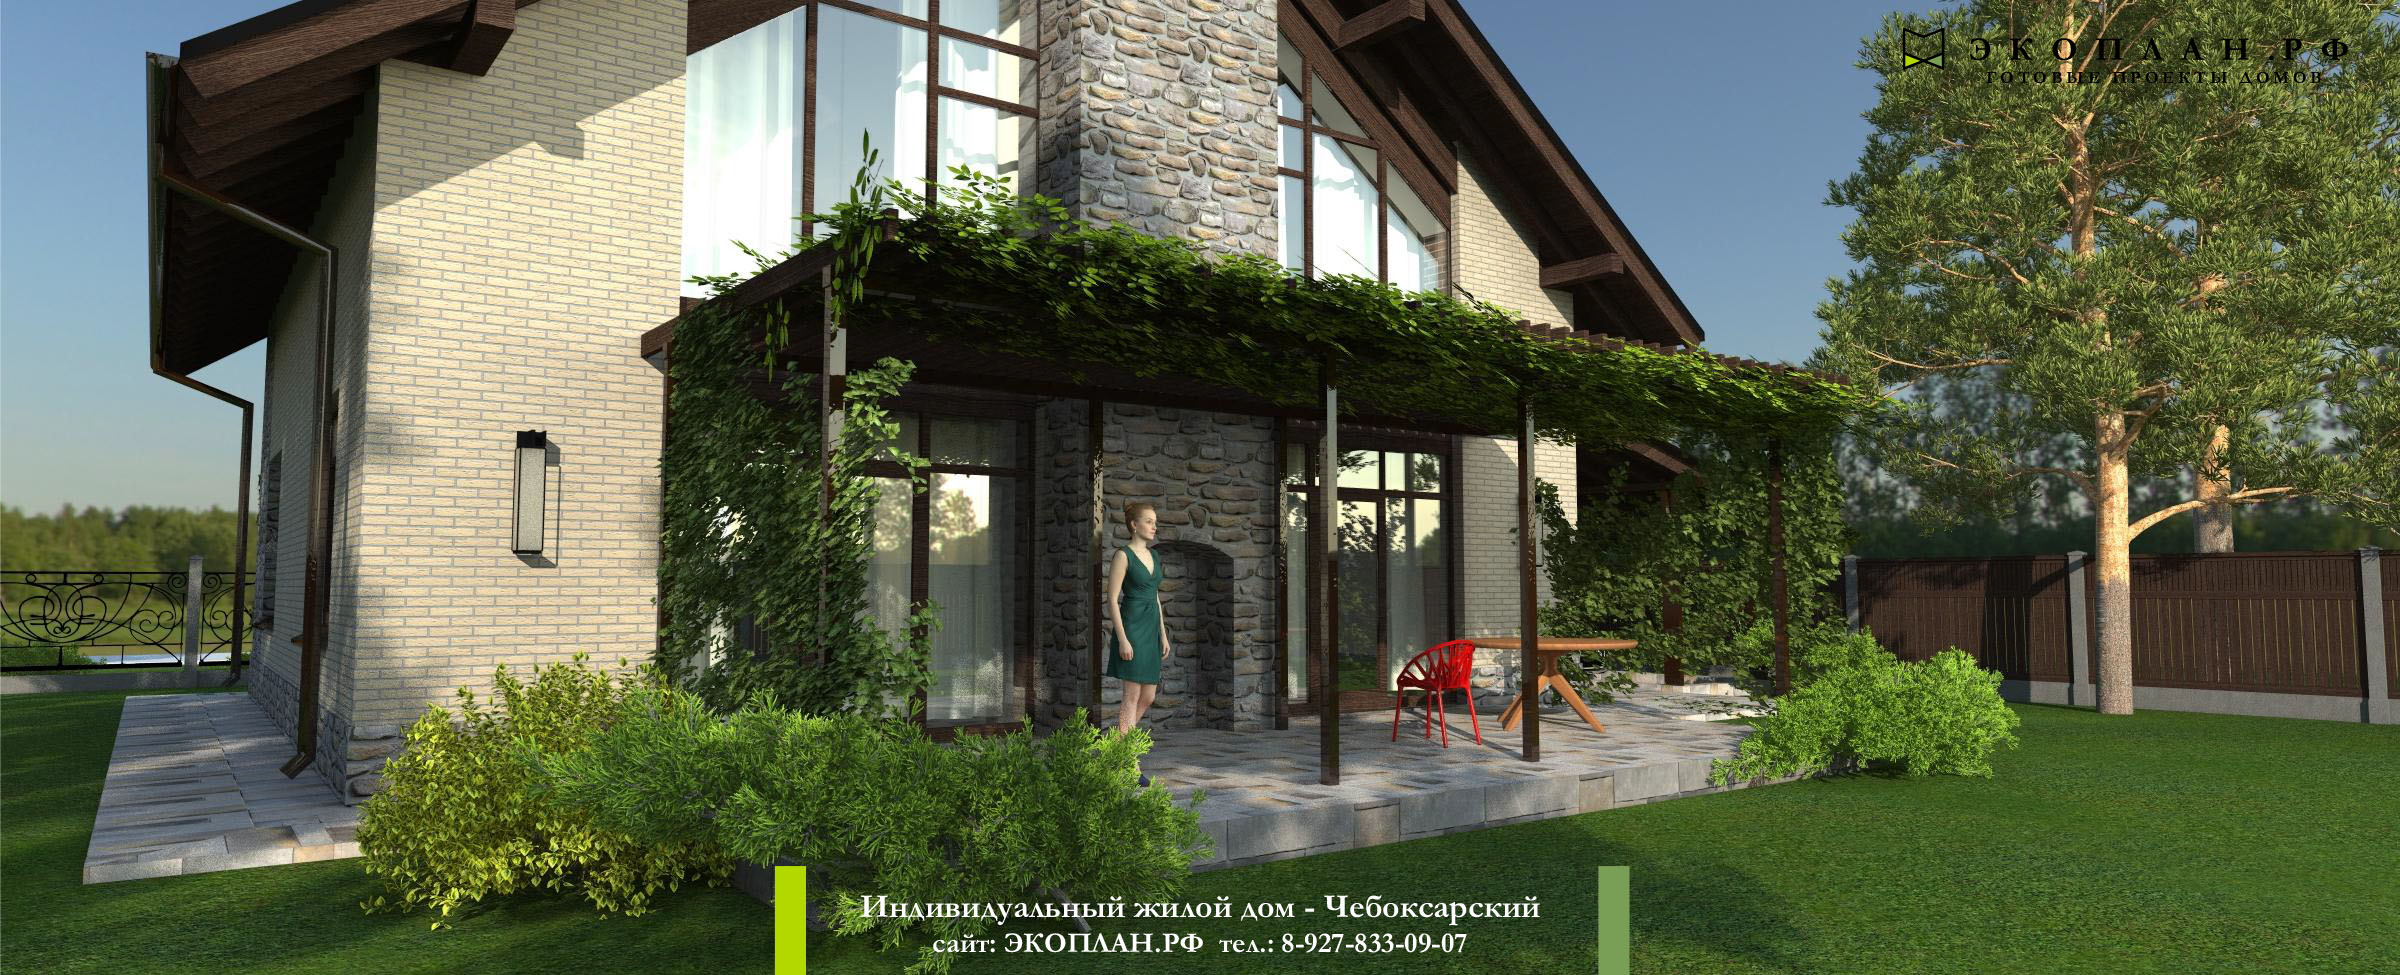 Чебоксарский - Готовый проект дома - Экоплан.рф фасад